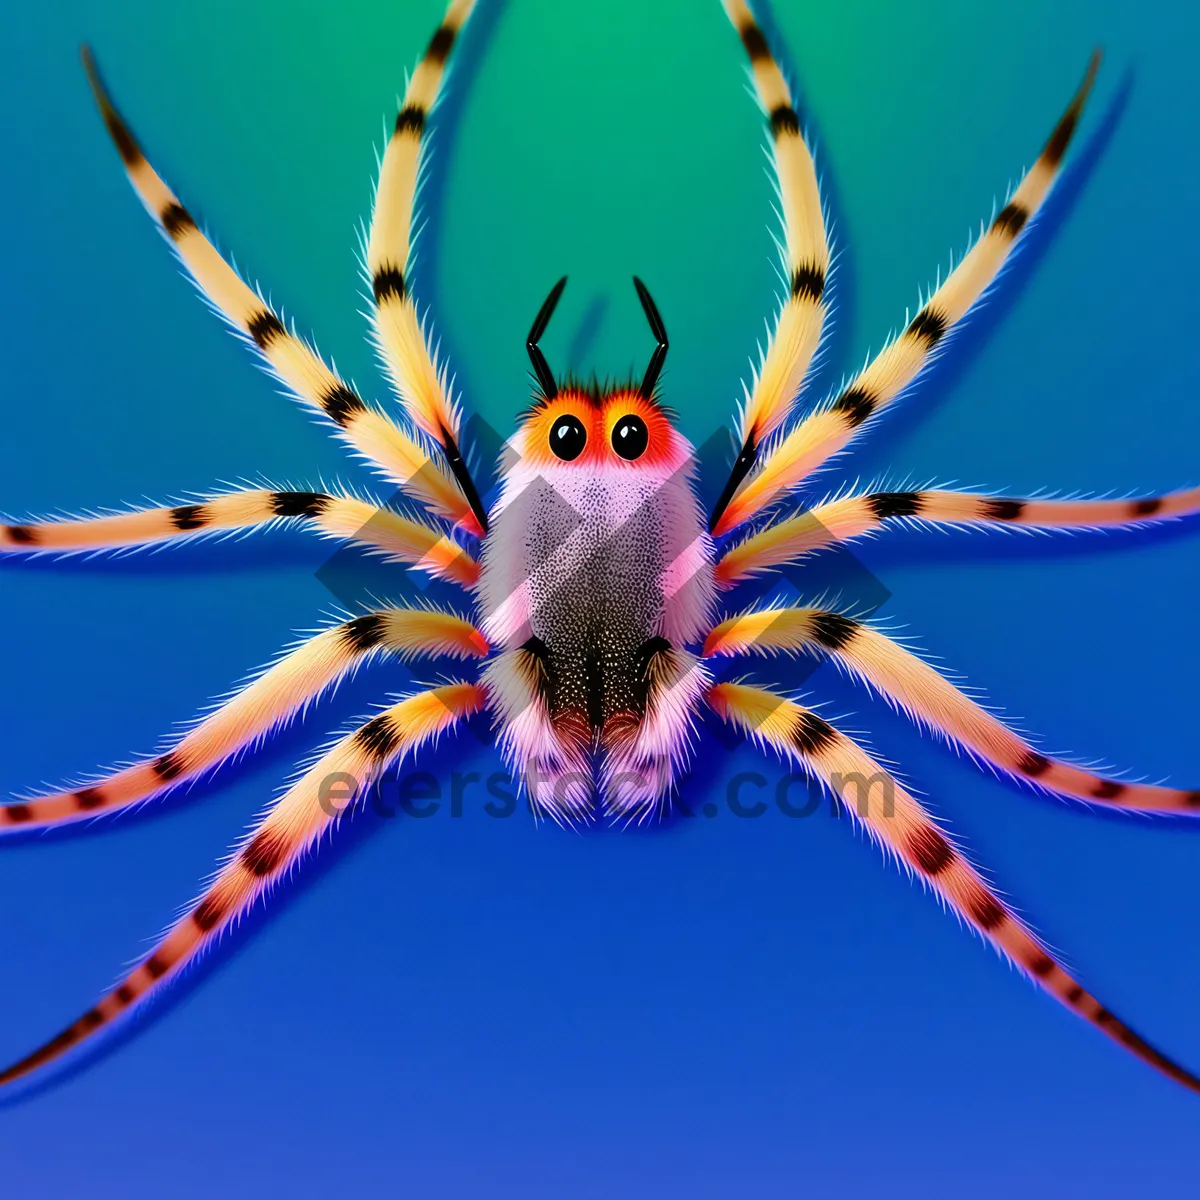 Picture of Spider on a Barn: Arachnid Arthropod in Sea